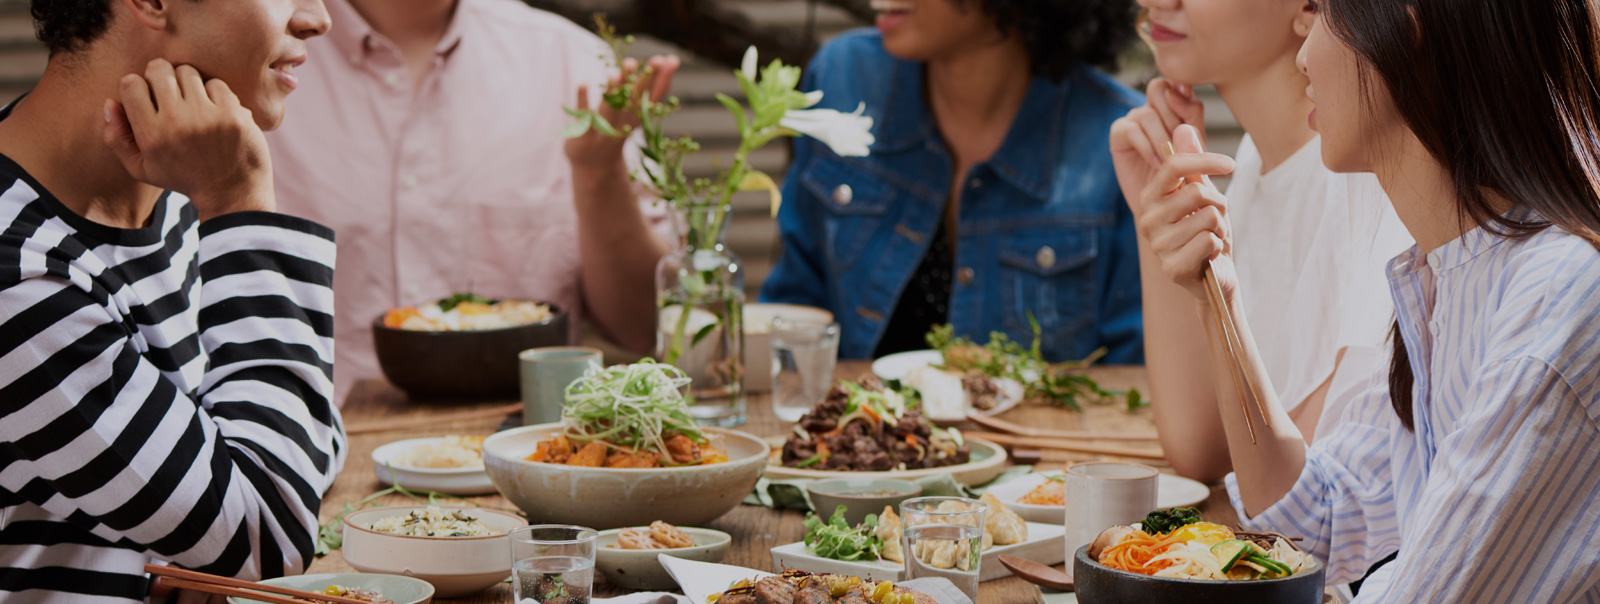 한국 음식이 놓인 테이블에 둘러 앉은 다양한 국적의 사람들 이미지